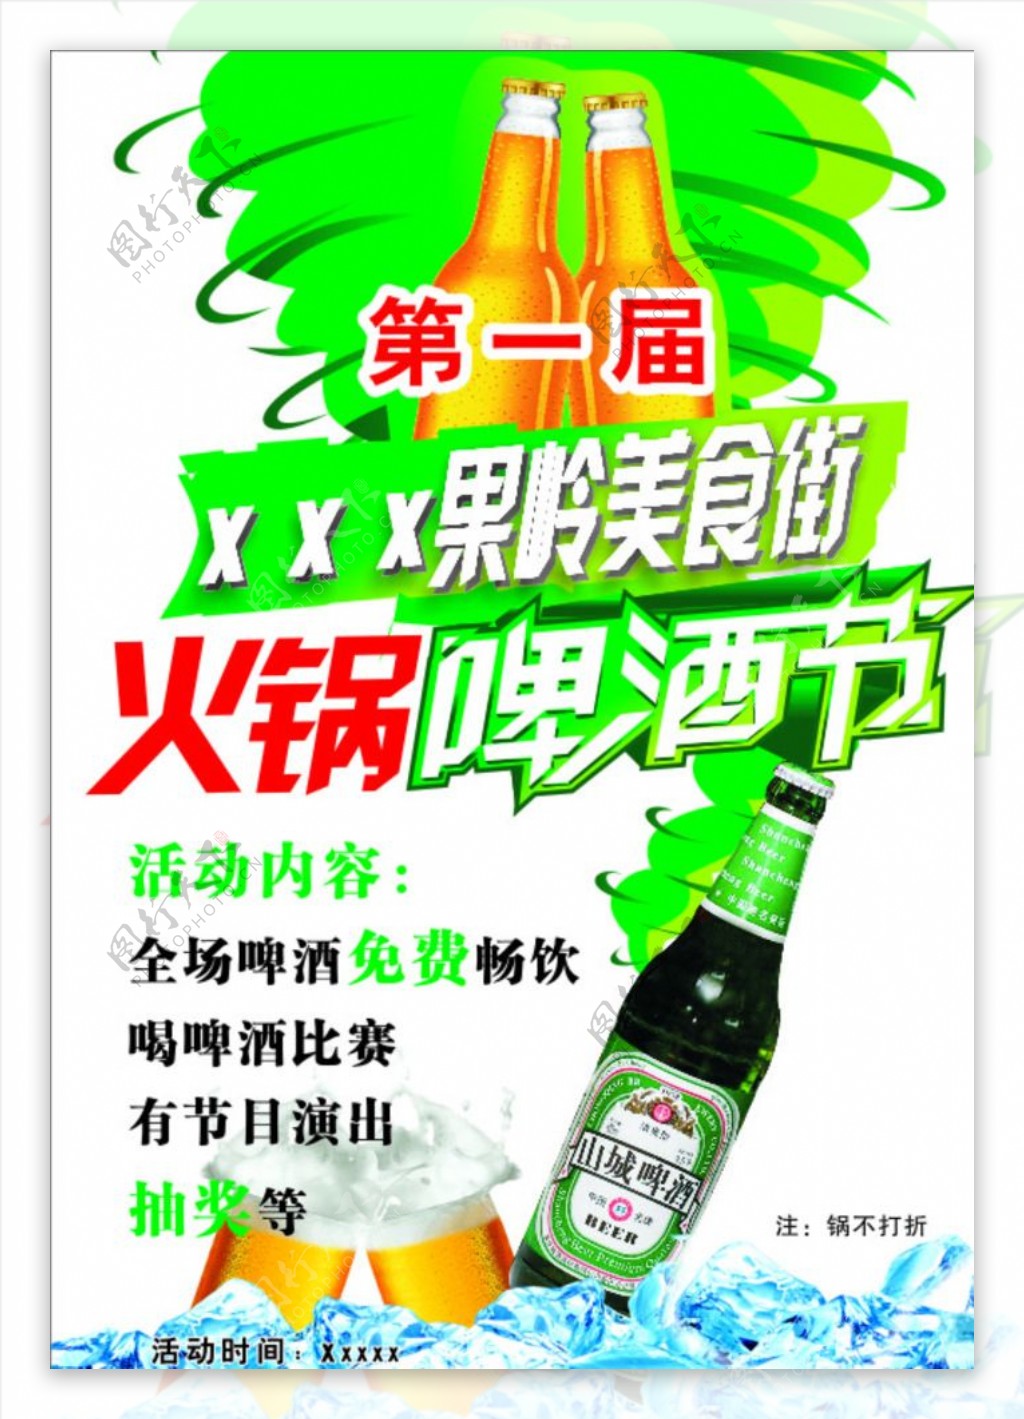 火锅啤酒节海报图片